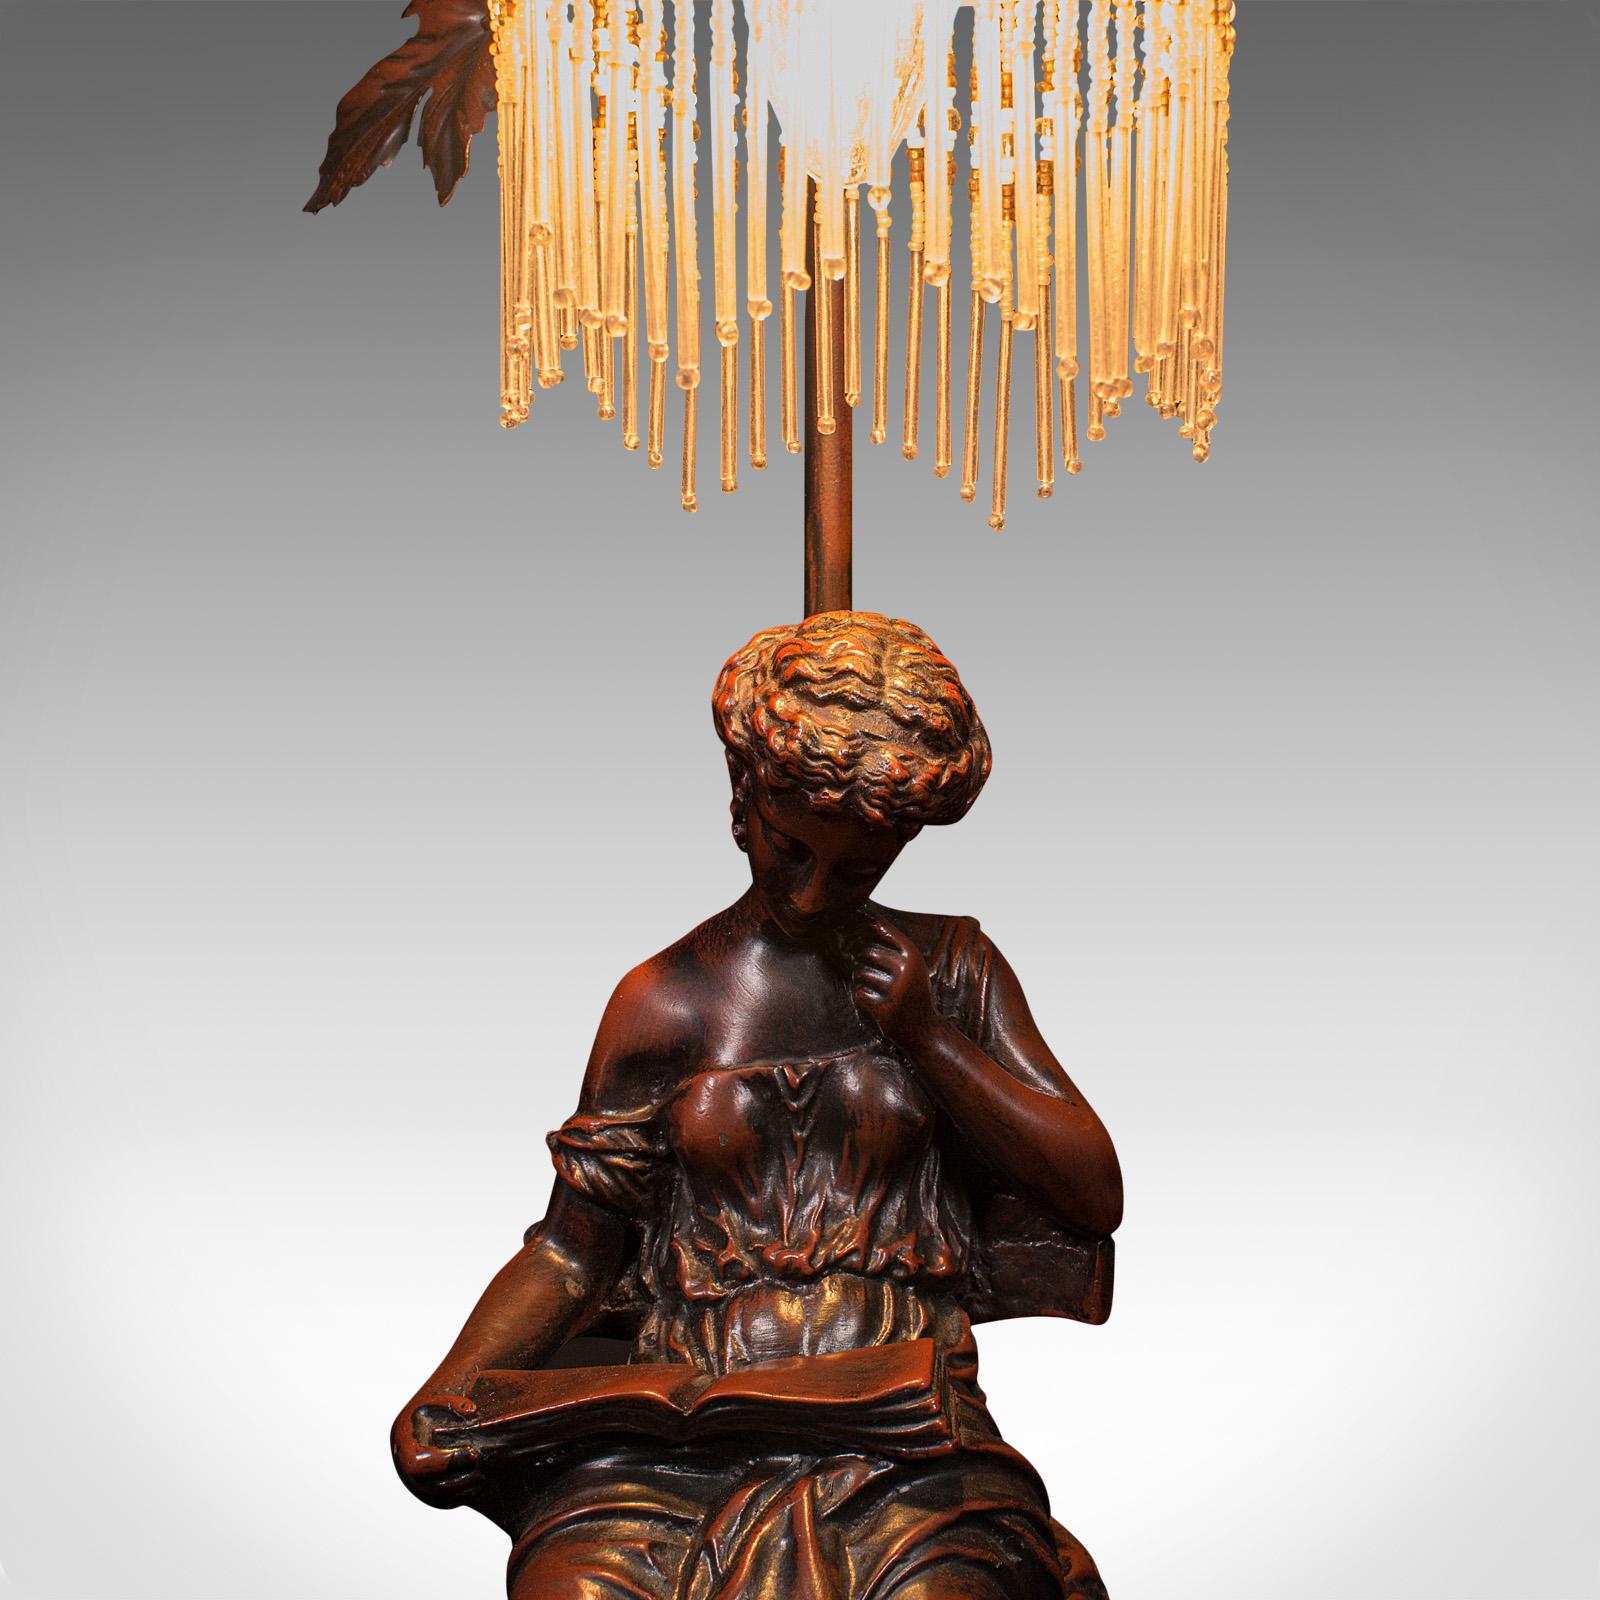 Vintage Decorative Lamp, French, Bronzed, Figural Light, Art Nouveau Revival For Sale 3